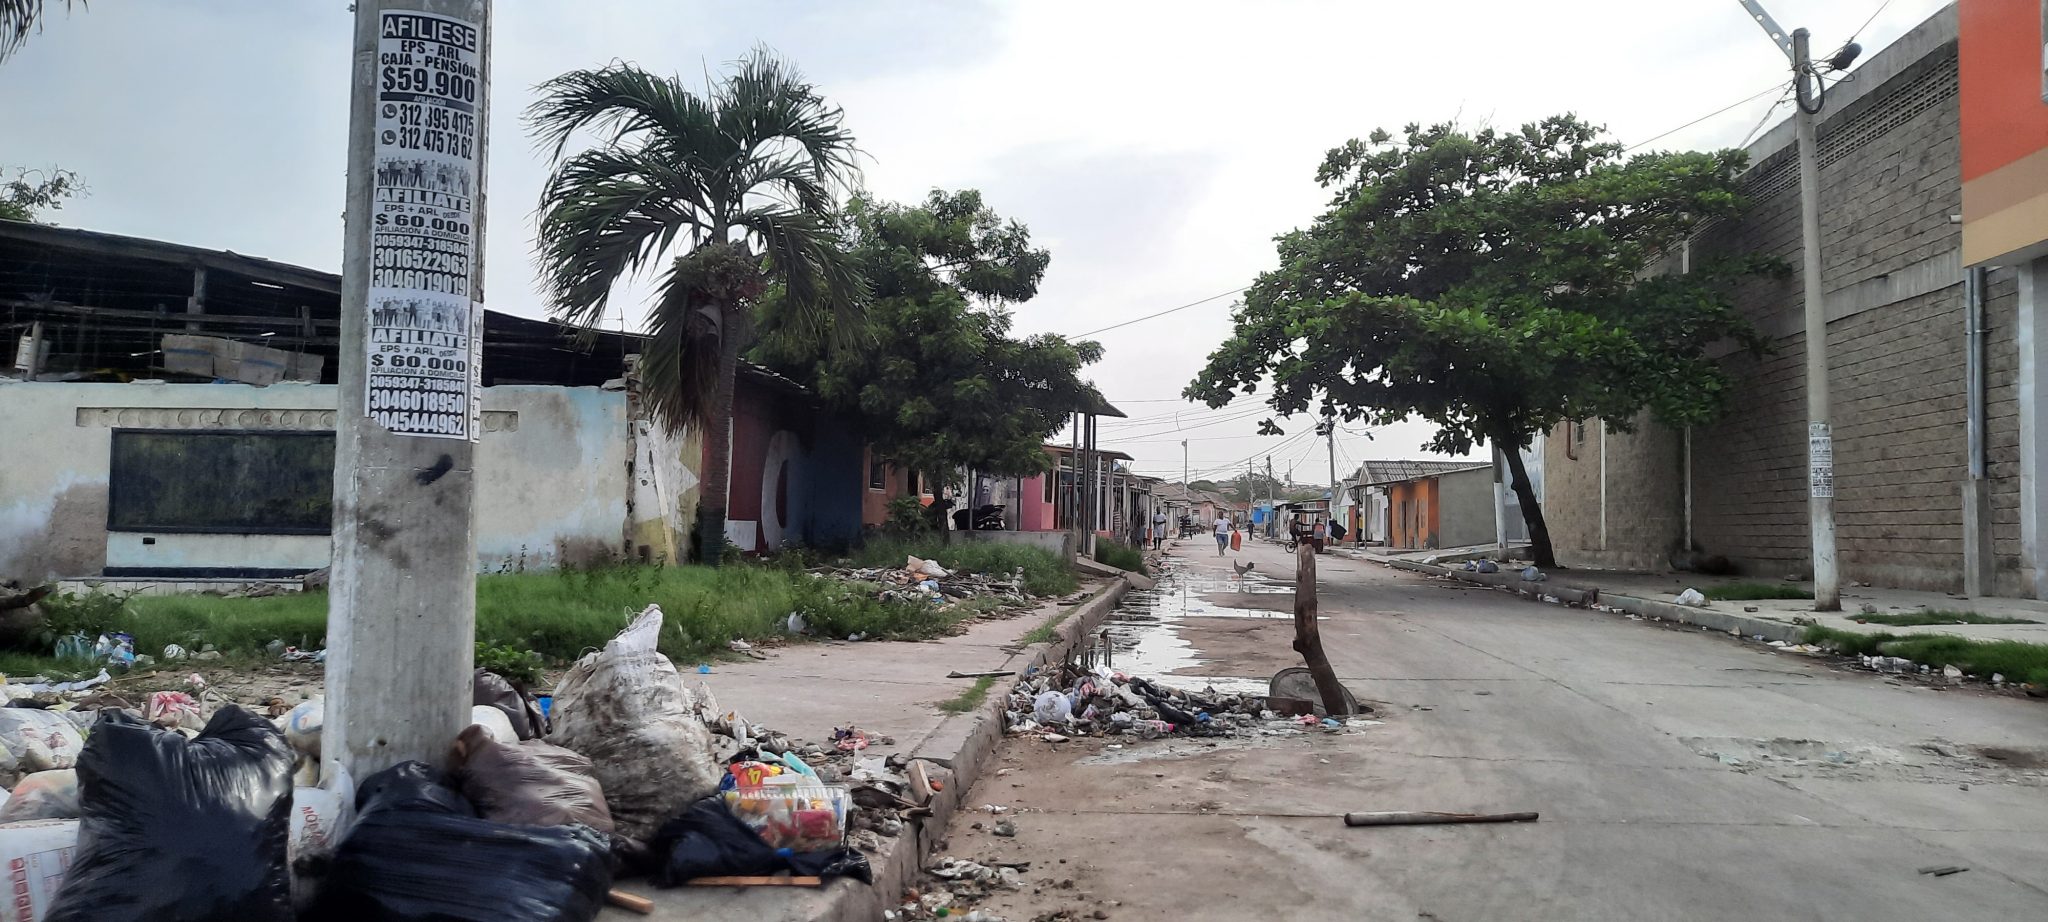 La situación de exclusión y pobreza de algunos barrios de Barranquilla contrasta con la imagen de ciudad moderna y pujante que vende la administración distrital. Foto: La Liga Contra el Silencio.